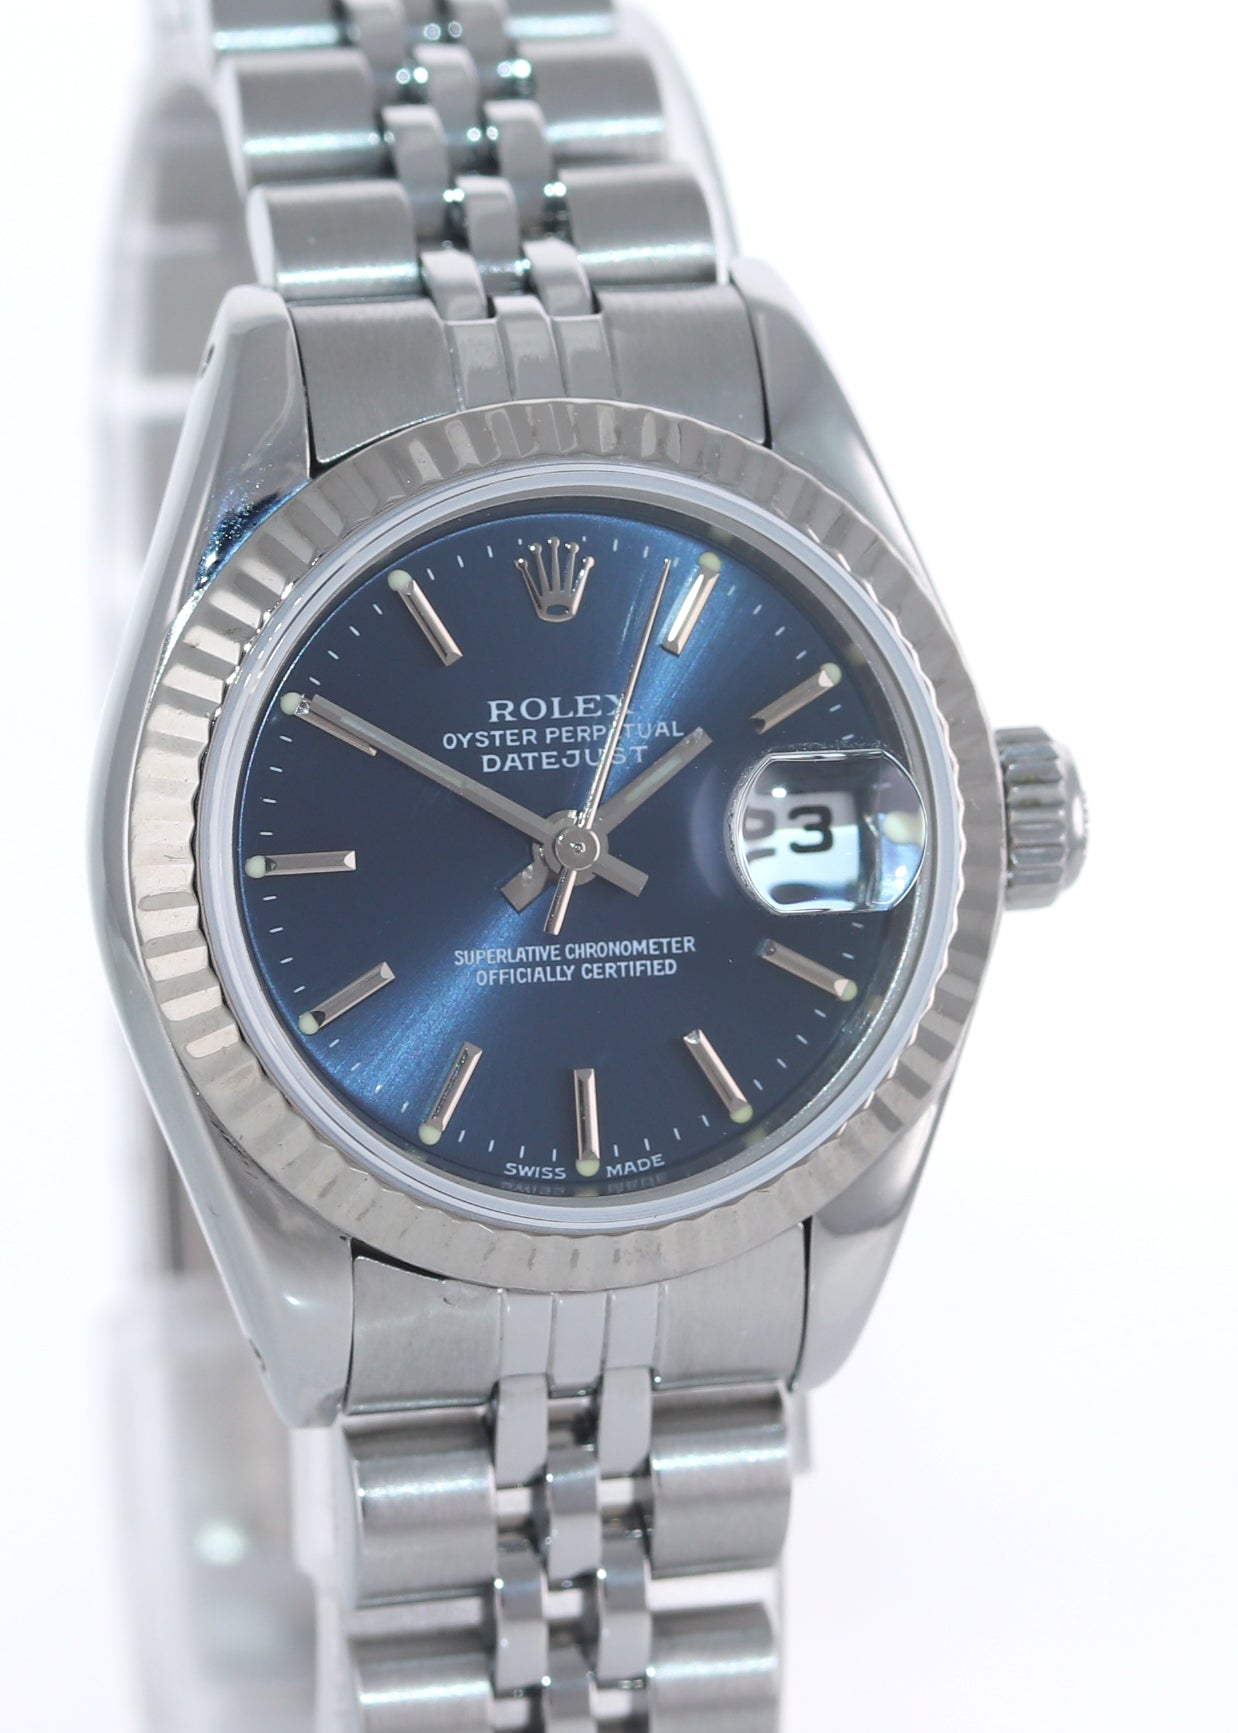 Ladies Rolex DateJust 26mm Blue Stick Fluted Bezel Steel Jubilee Watch 69174